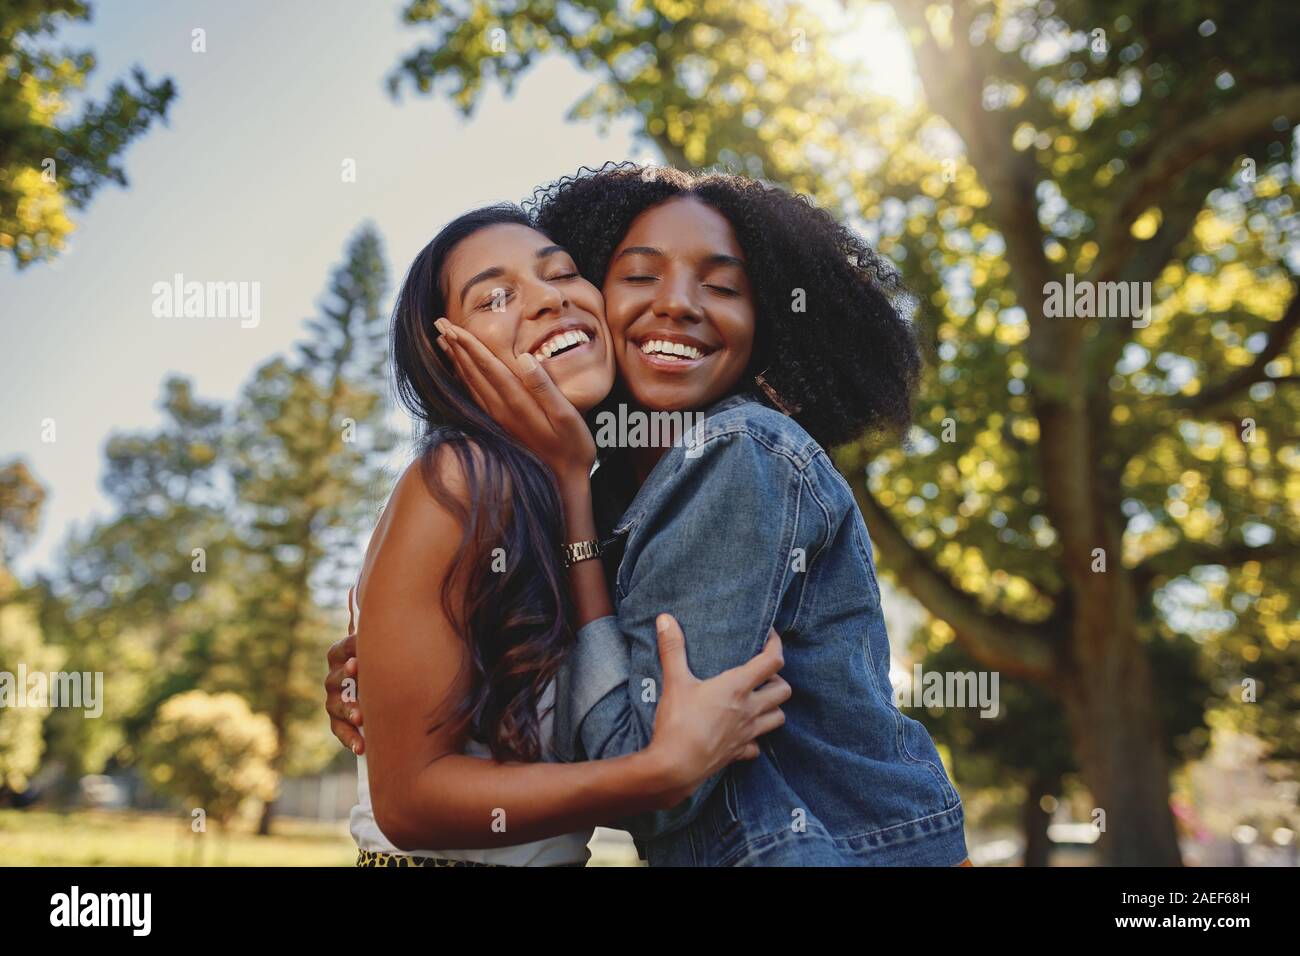 Portrait of a Smiling happy divers jeune femelle noir et blanc friends hugging les uns les autres et s'amuser en plein air dans le parc Banque D'Images